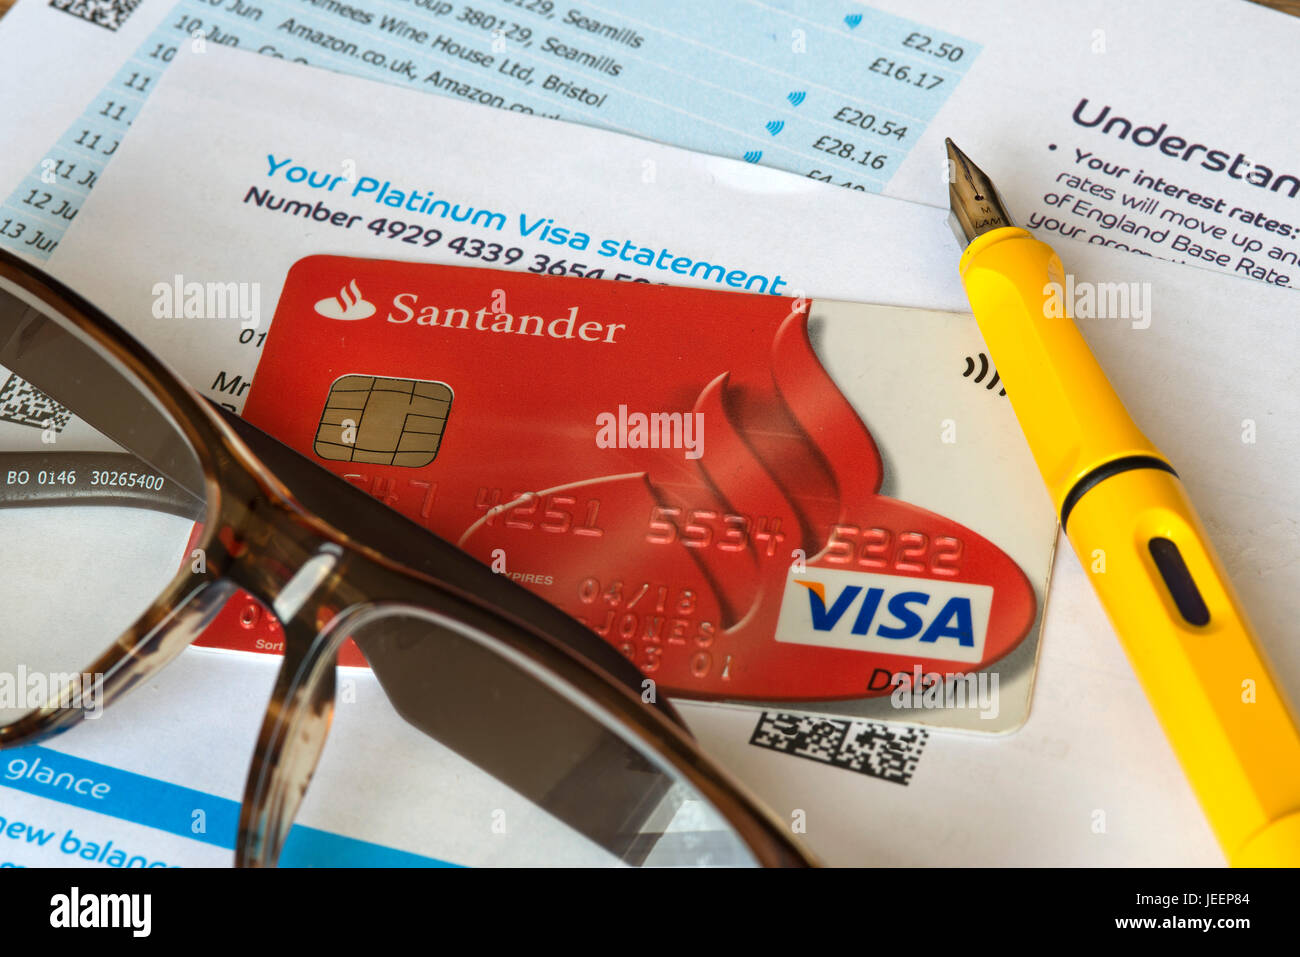 Santander-EC-Karte und Barclays Platin Visa Kreditkarten-Kontoauszug mit ein paar Gläsern und Füllfederhalter. Stockfoto